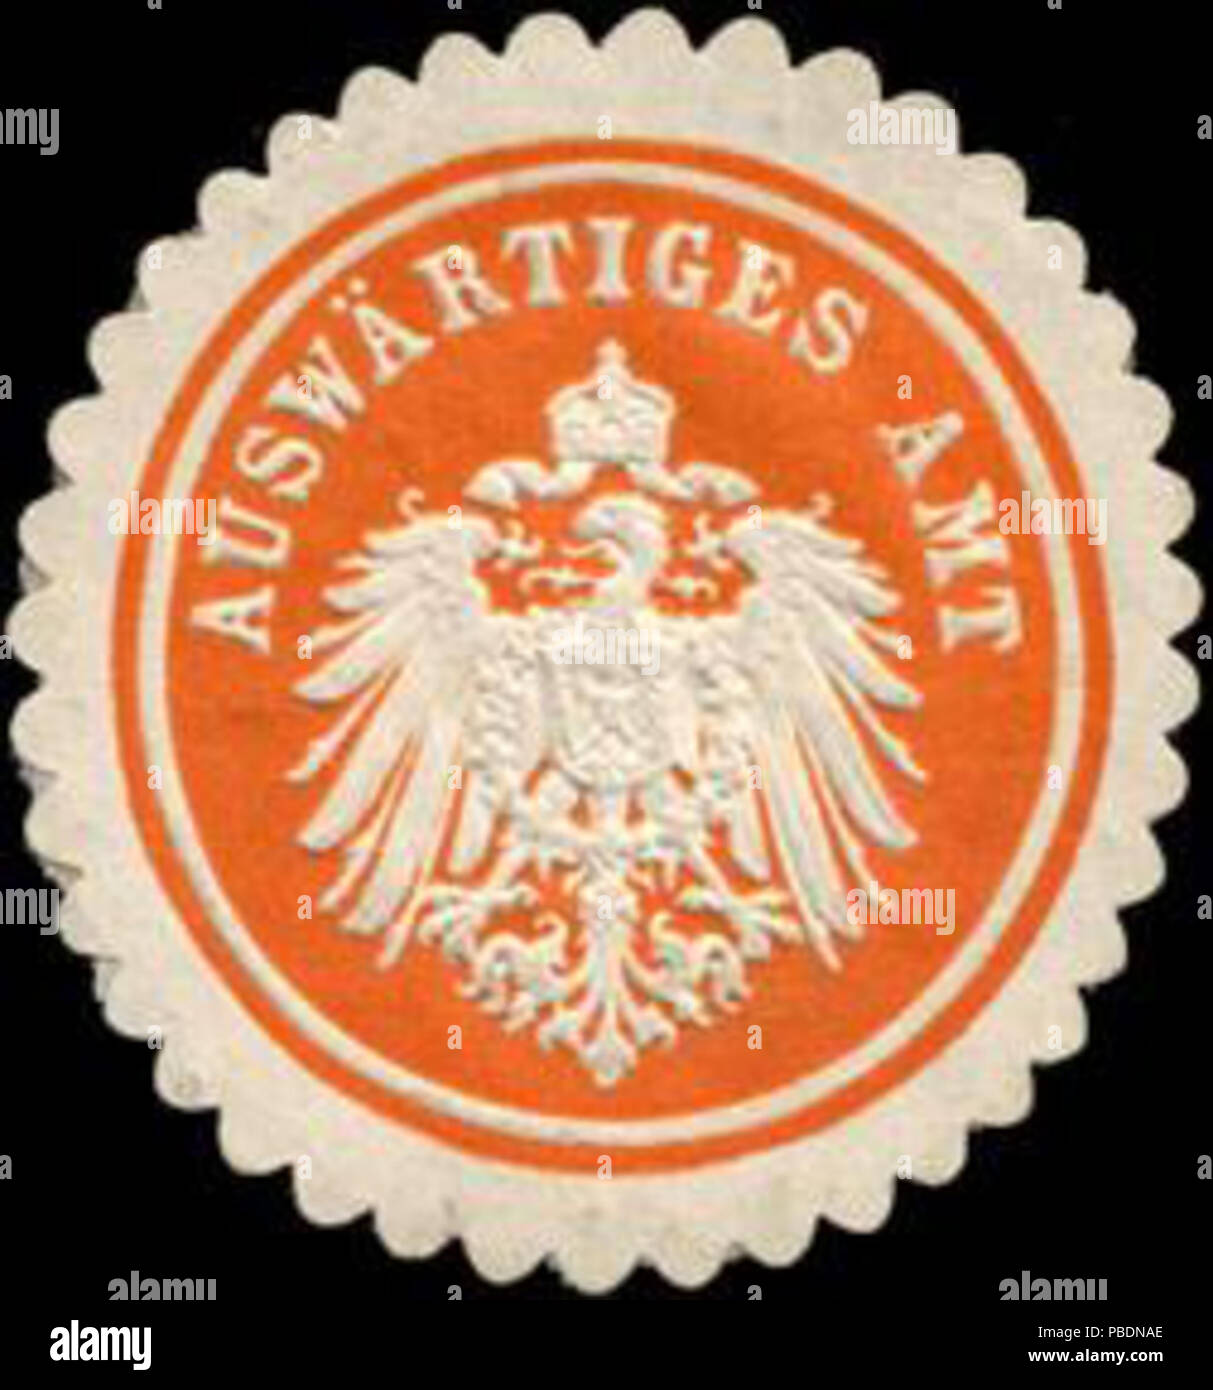 Alte Briefverschlussmarke aus Papier, welche seit ca. 1850 von Behoerden, Anwaelten, Notaren und Firmen zum verschliessen der Post verwendet wurde. 1325 Siegelmarke Auswärtiges Amt W0212402 Stock Photo